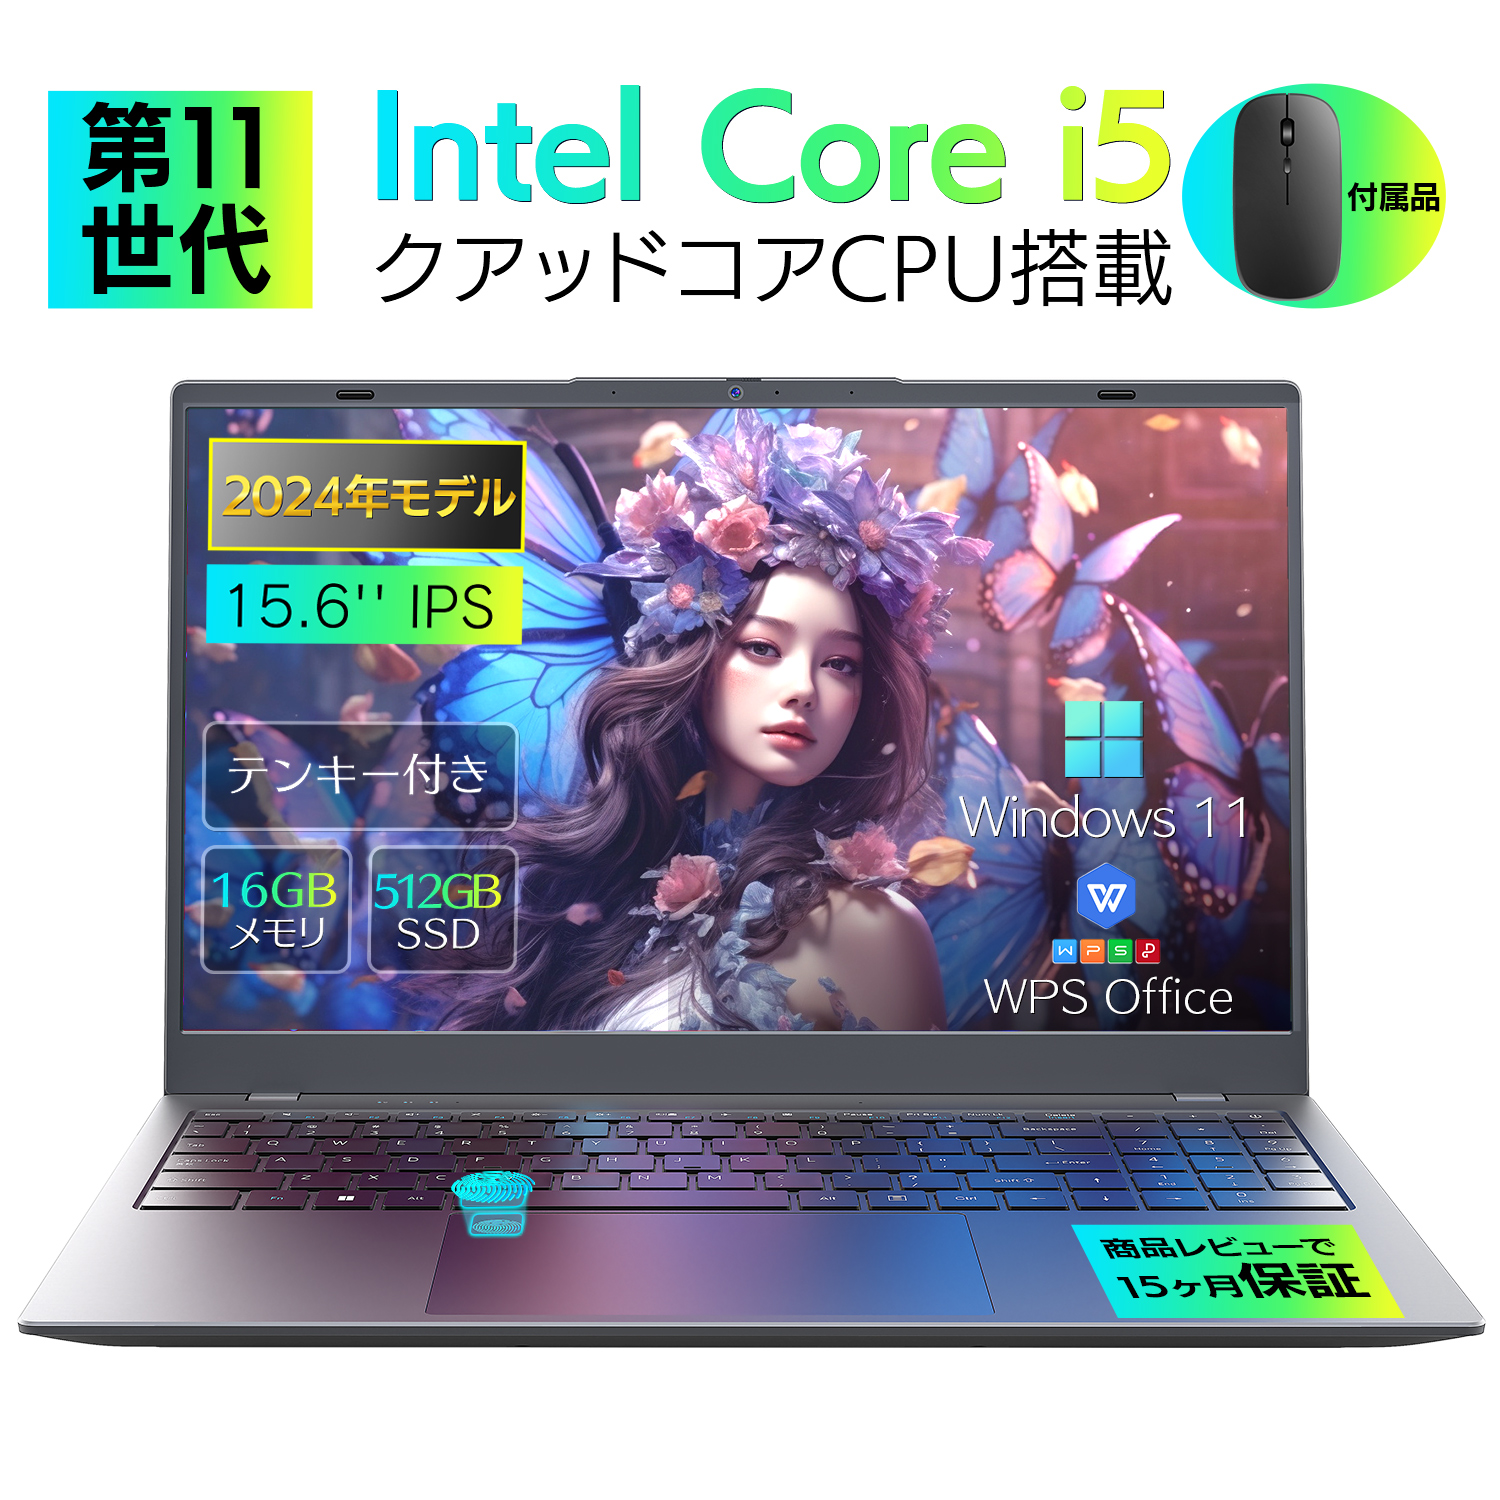 新品パソコン ノート office付き 15.6インチ Win11搭載 インテル Corei5-1035G DDR5 メモリー:16GB/高速SSD:512GB/3.7GHz テンキー付/指紋認証付き  NC15NTT